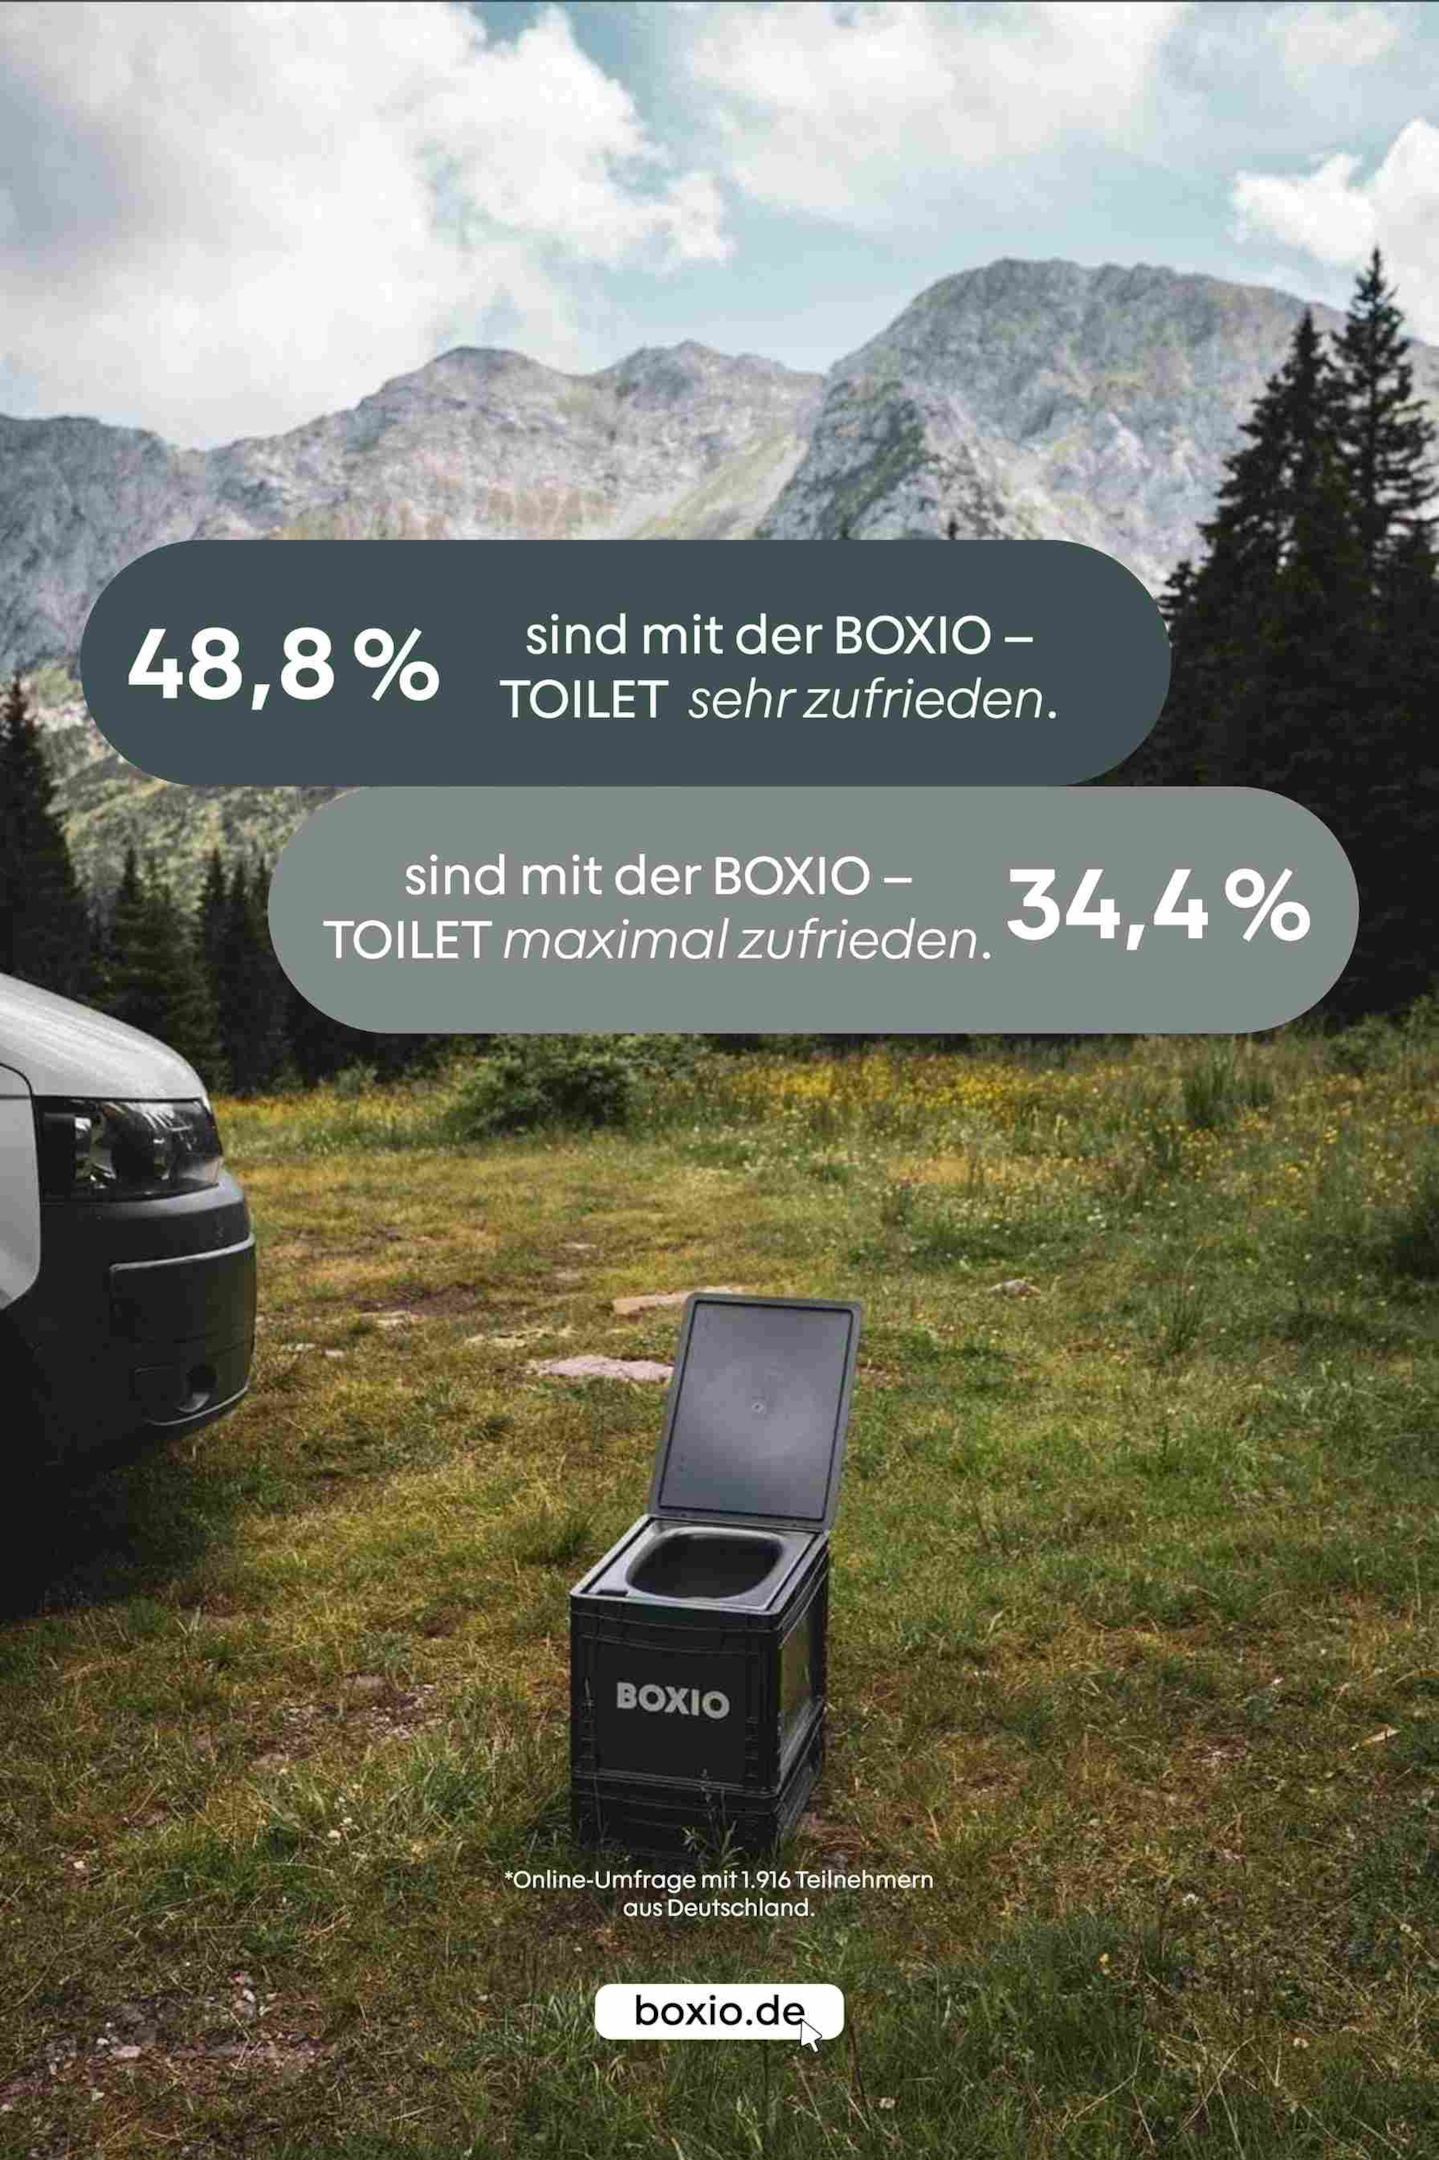 BOXIO-Toilet, im Hintergrund Berglandschaft, Text: 48,8 Prozent sind mit der BOXIO-Toilet sehr zufrieden, 34,4 Prozent maximal zufrieden 